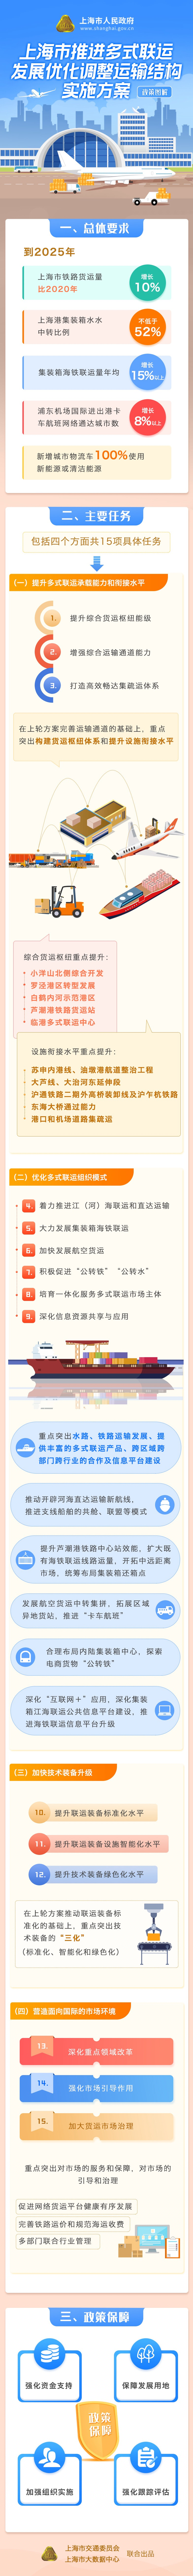 一图读懂《上海市推进多式联运发展优化调整运输结构实施方案》.jpg